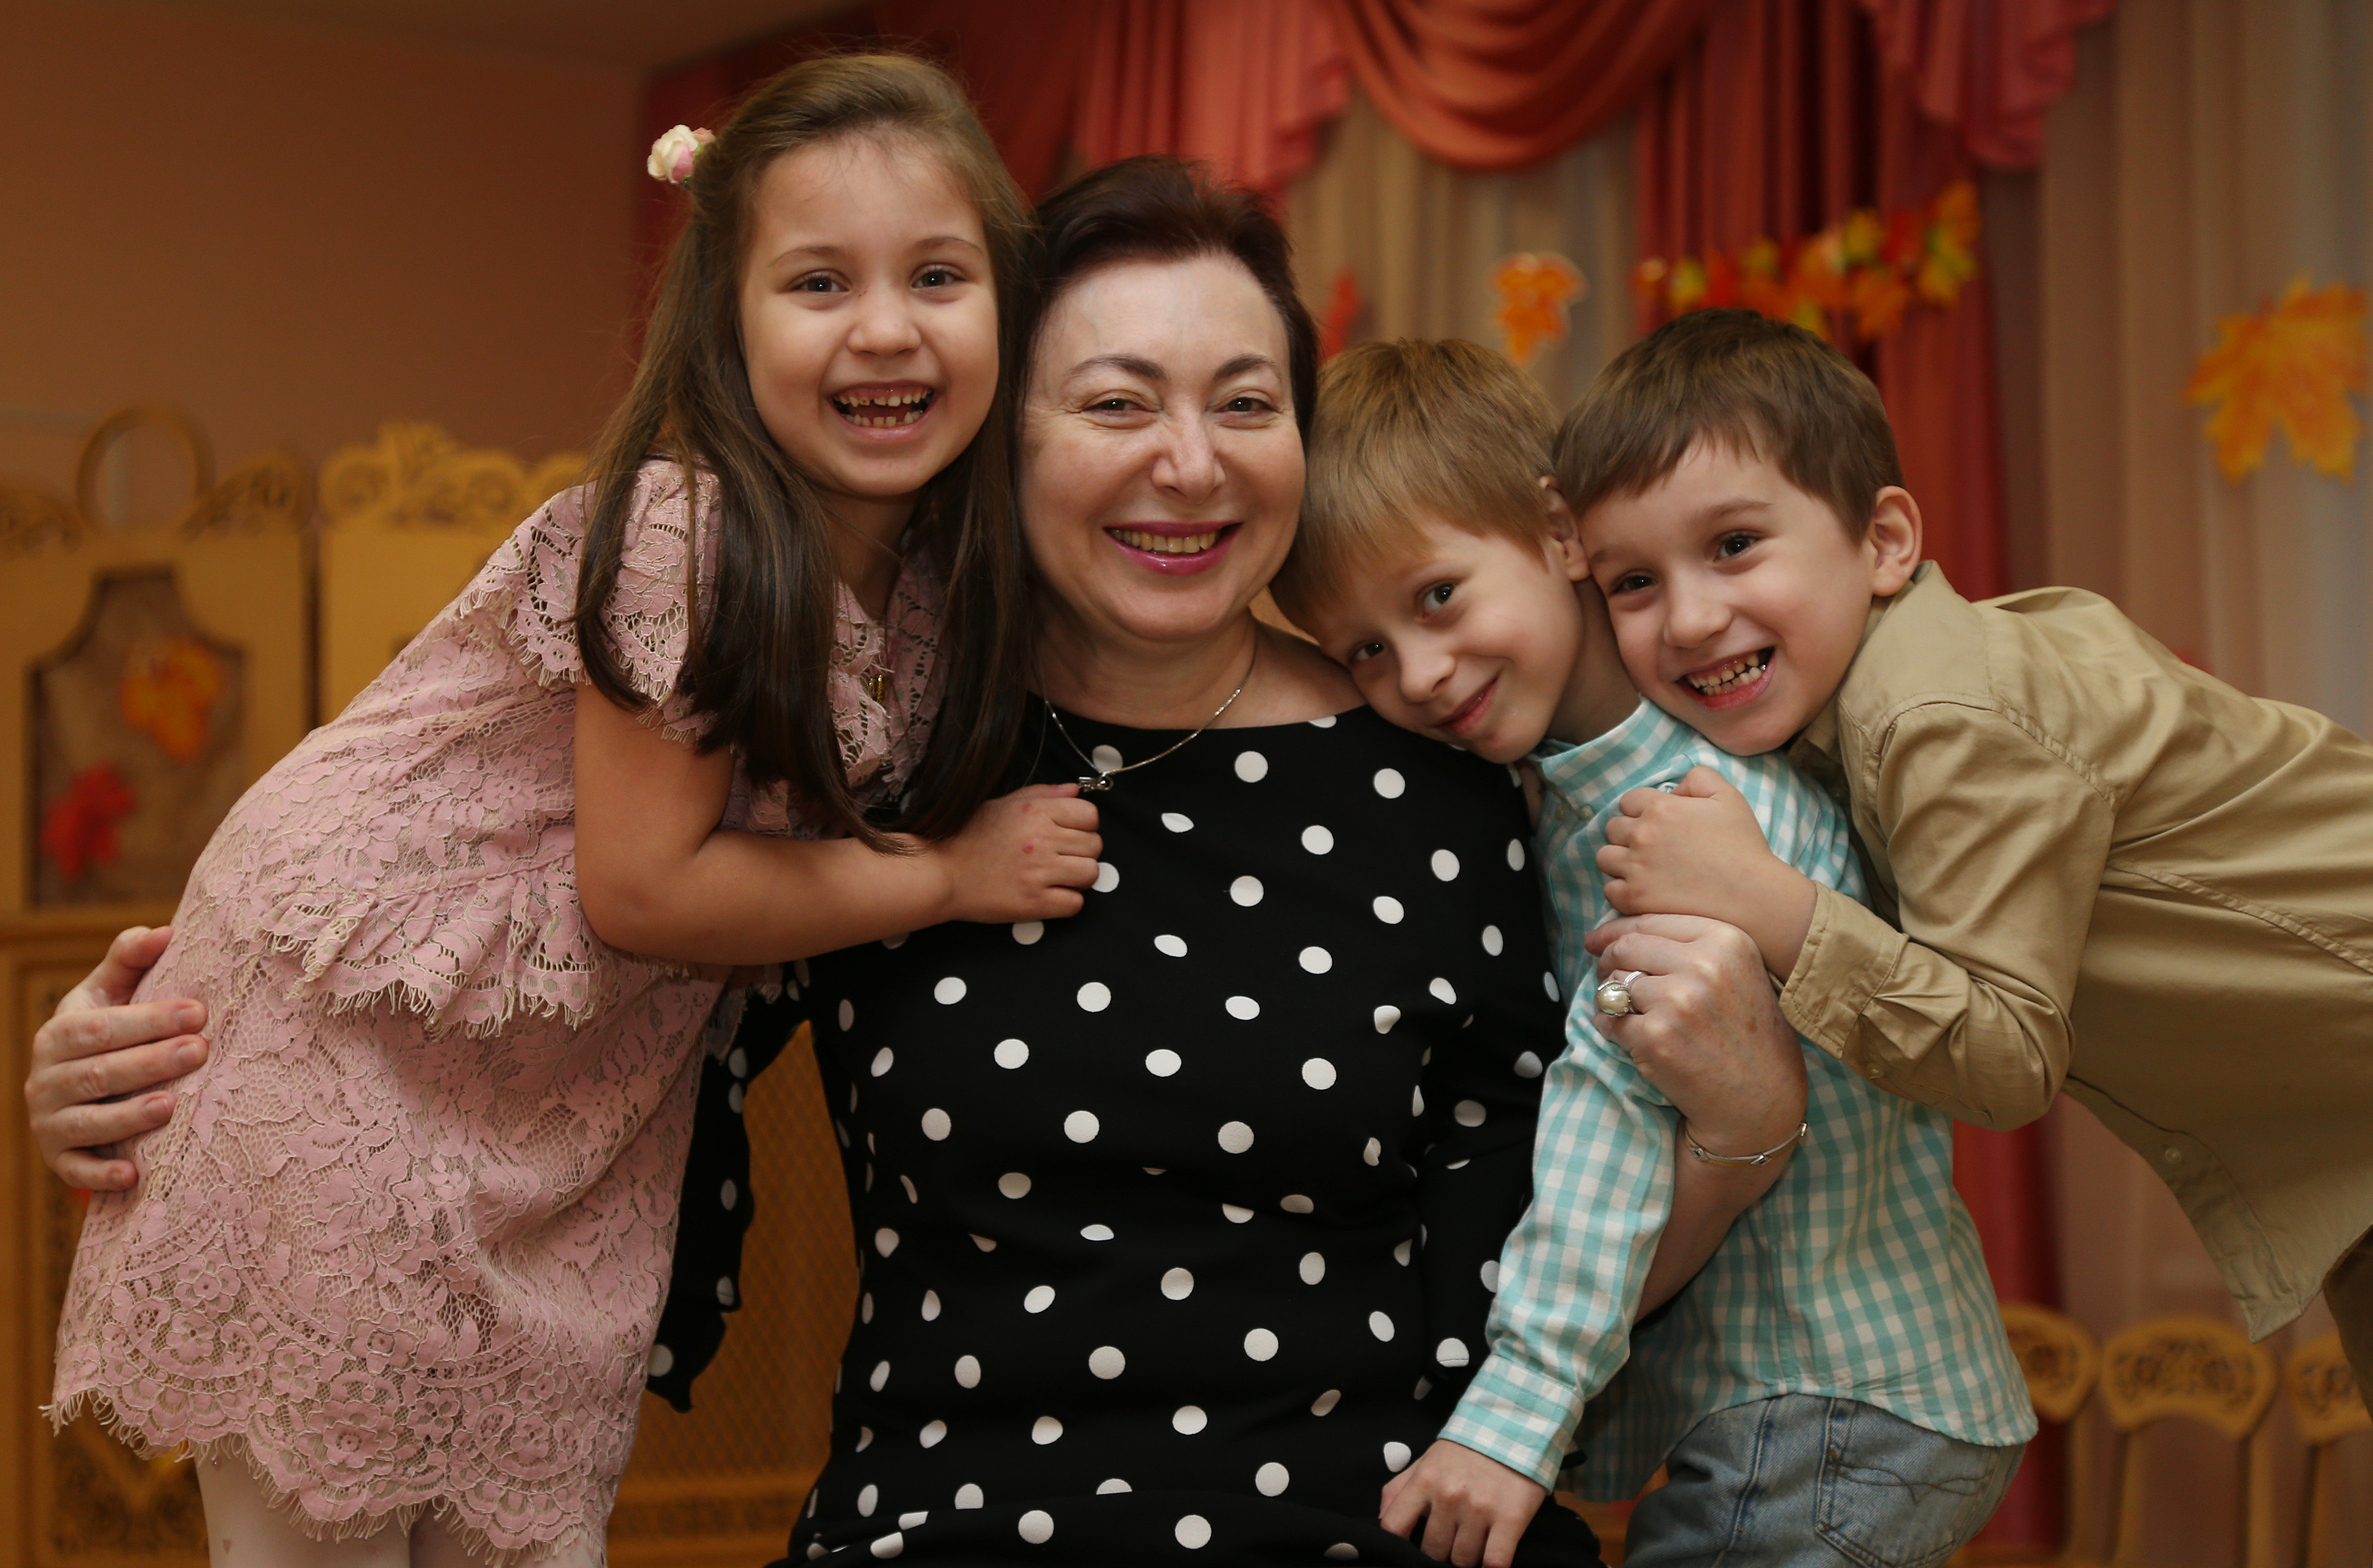 19 ноября 2020 года. Луиза Шахидова и ее тройня: Элиза, Эмин и Эльдар (слева направо) — бесконечная мамина радость и гордость. Фото: Наталия Нечаева